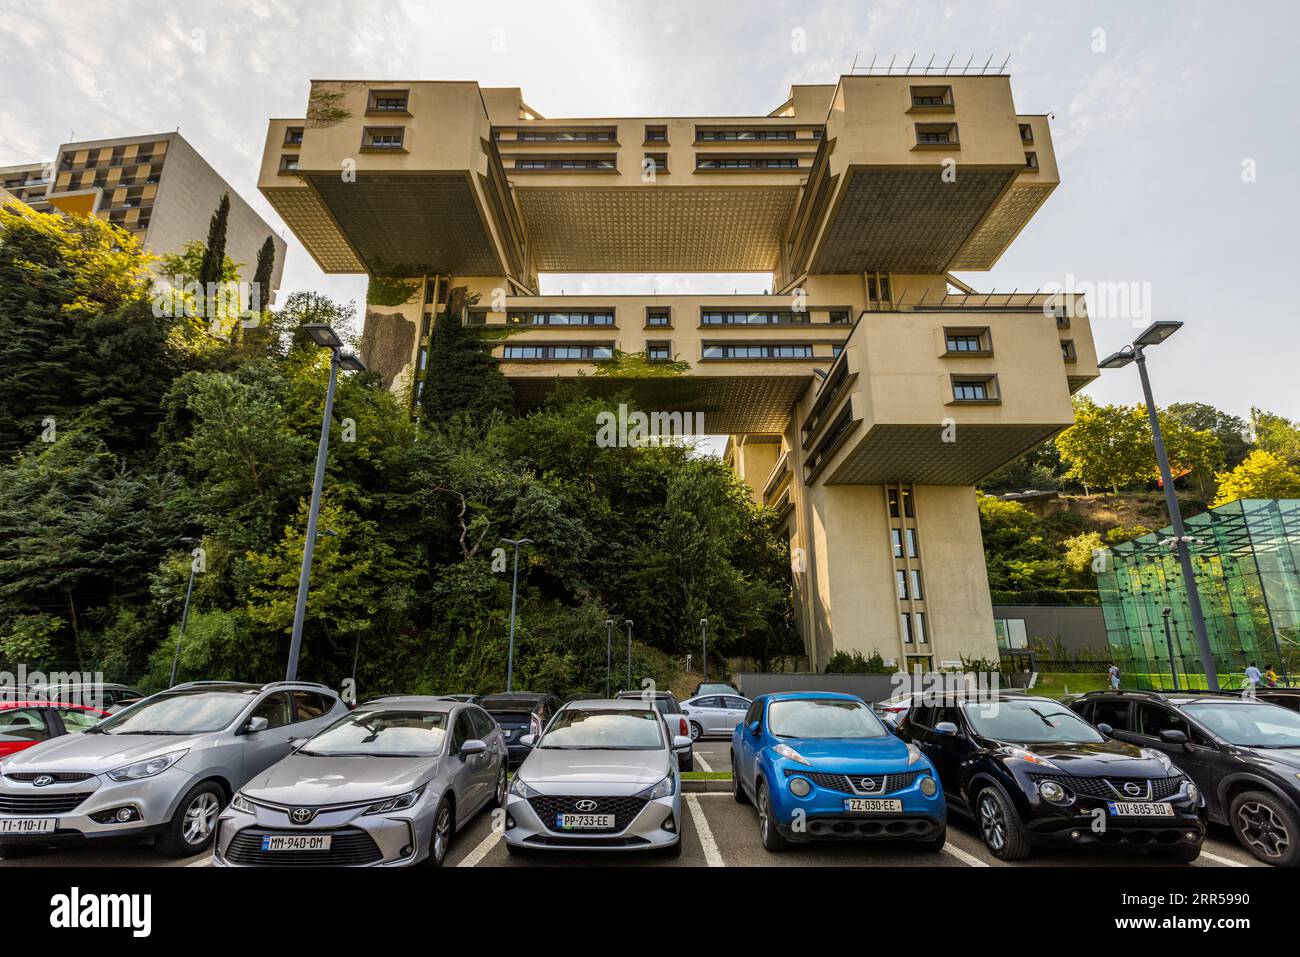 L'ex edificio amministrativo del Ministero della costruzione stradale a Tbilisi è uno degli edifici più importanti del modernismo socialista in Georgia. Dopo la ricostruzione, ora ospita la sede della Bank of Georgia Foto Stock